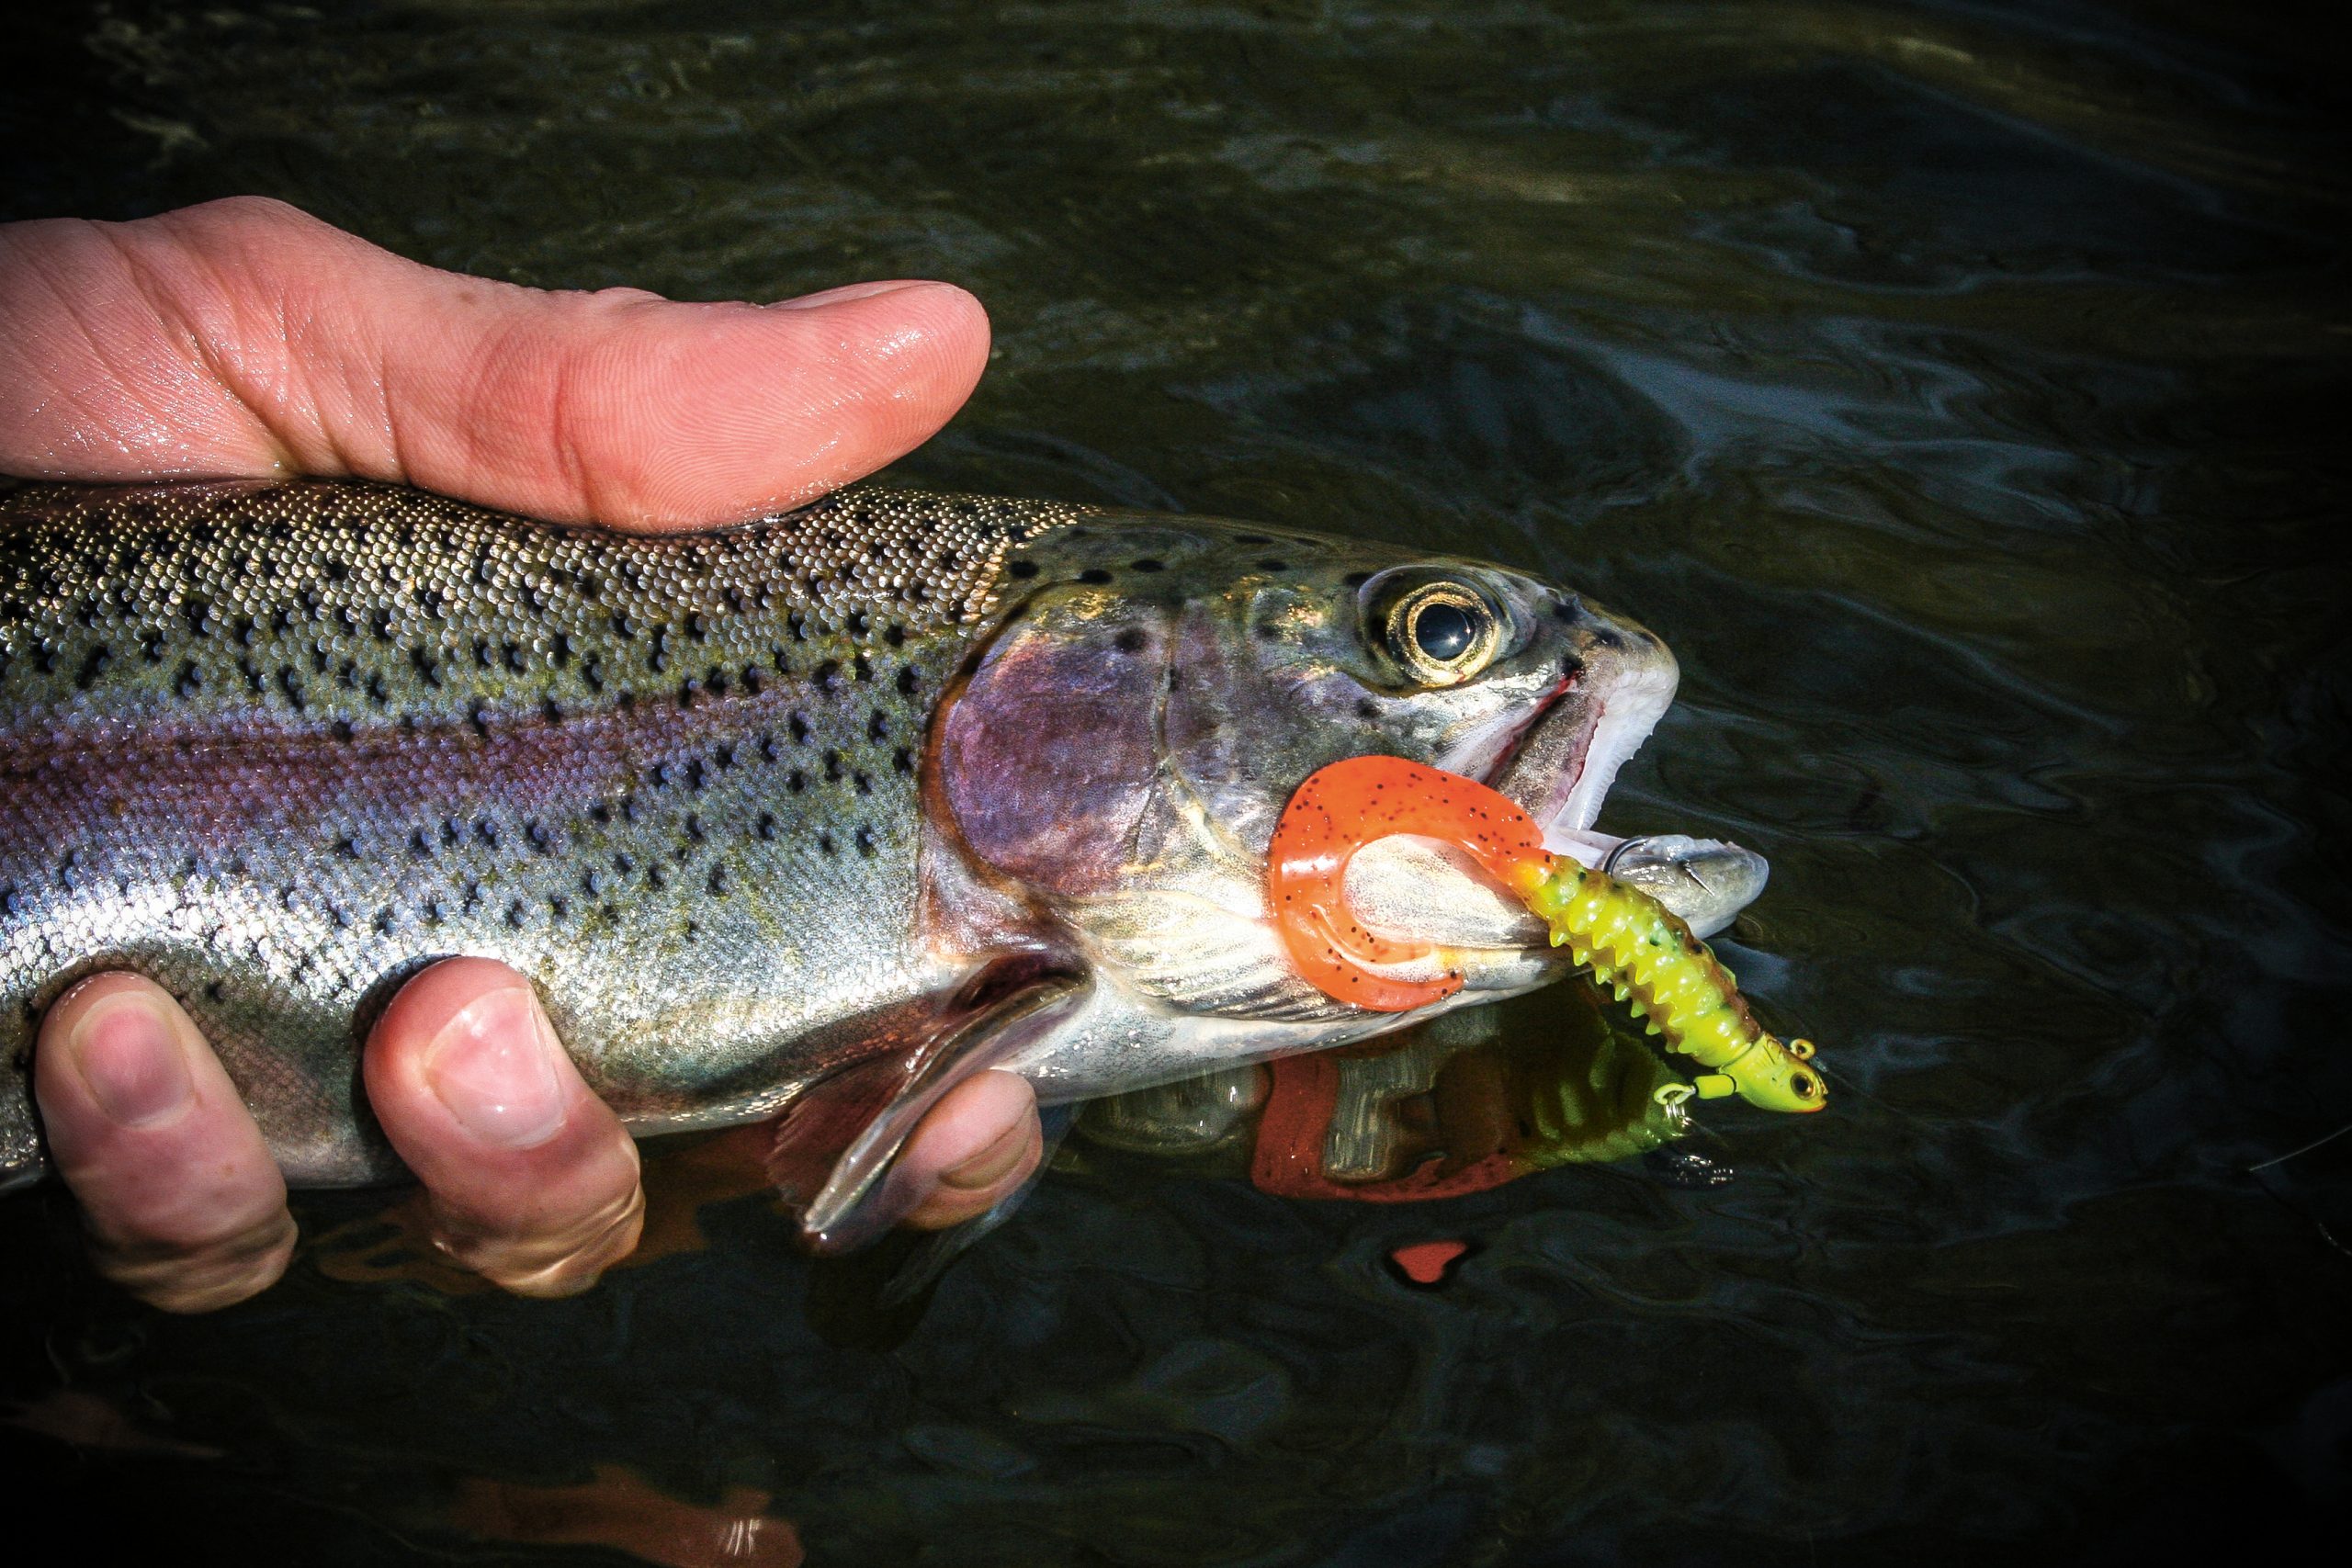 trout power bait techniques - Google Search  Trout fishing tips, Crappie  fishing, Trout fishing